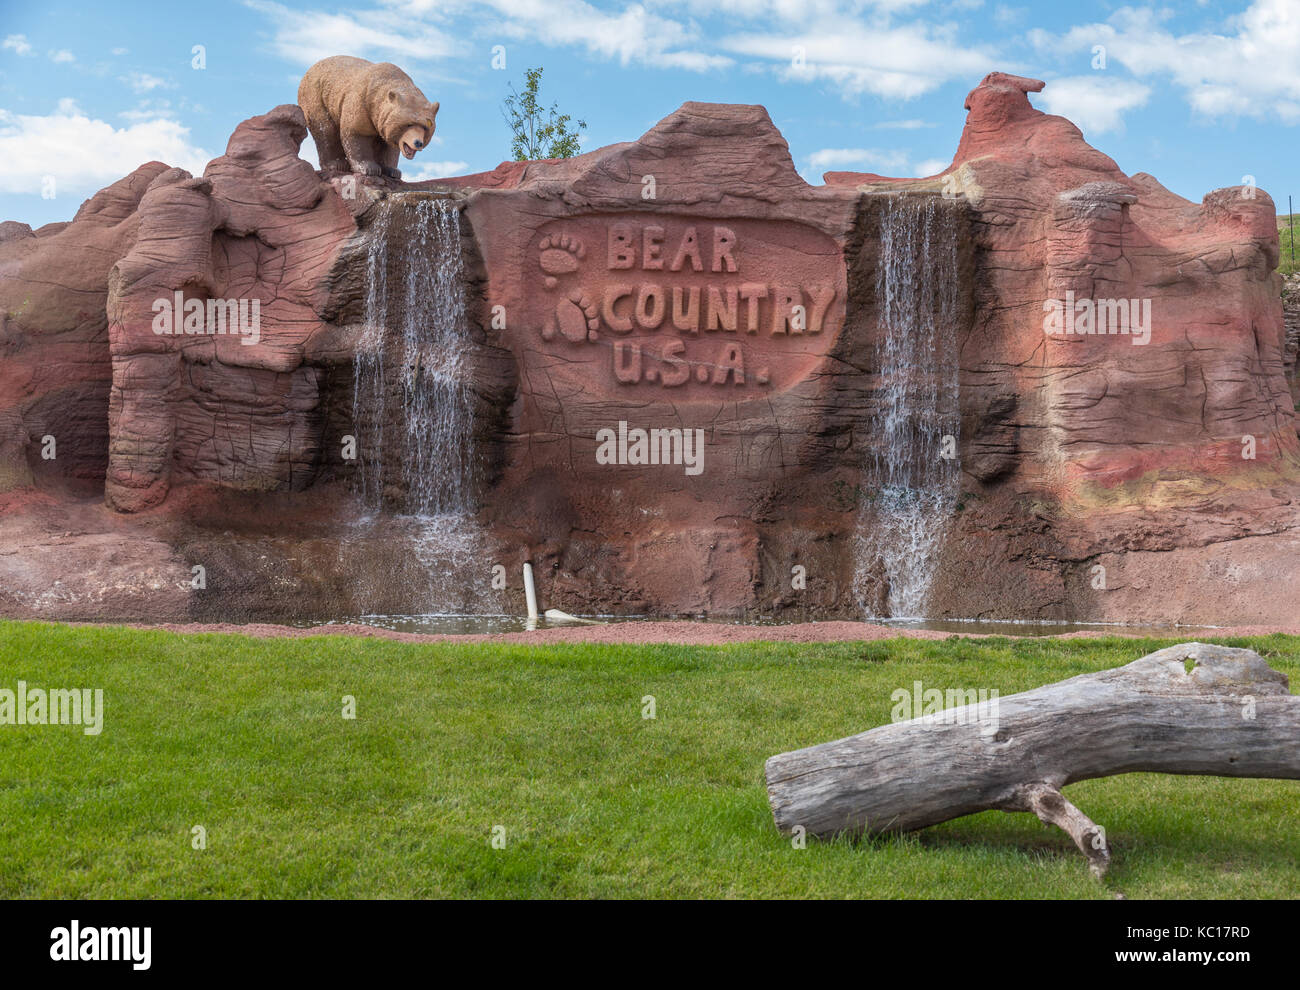 Eingang für Bear Country USA. Ein Unternehmen, das zur Schau stellt zahlreiche Tiere in South Dakota, USA. Stockfoto